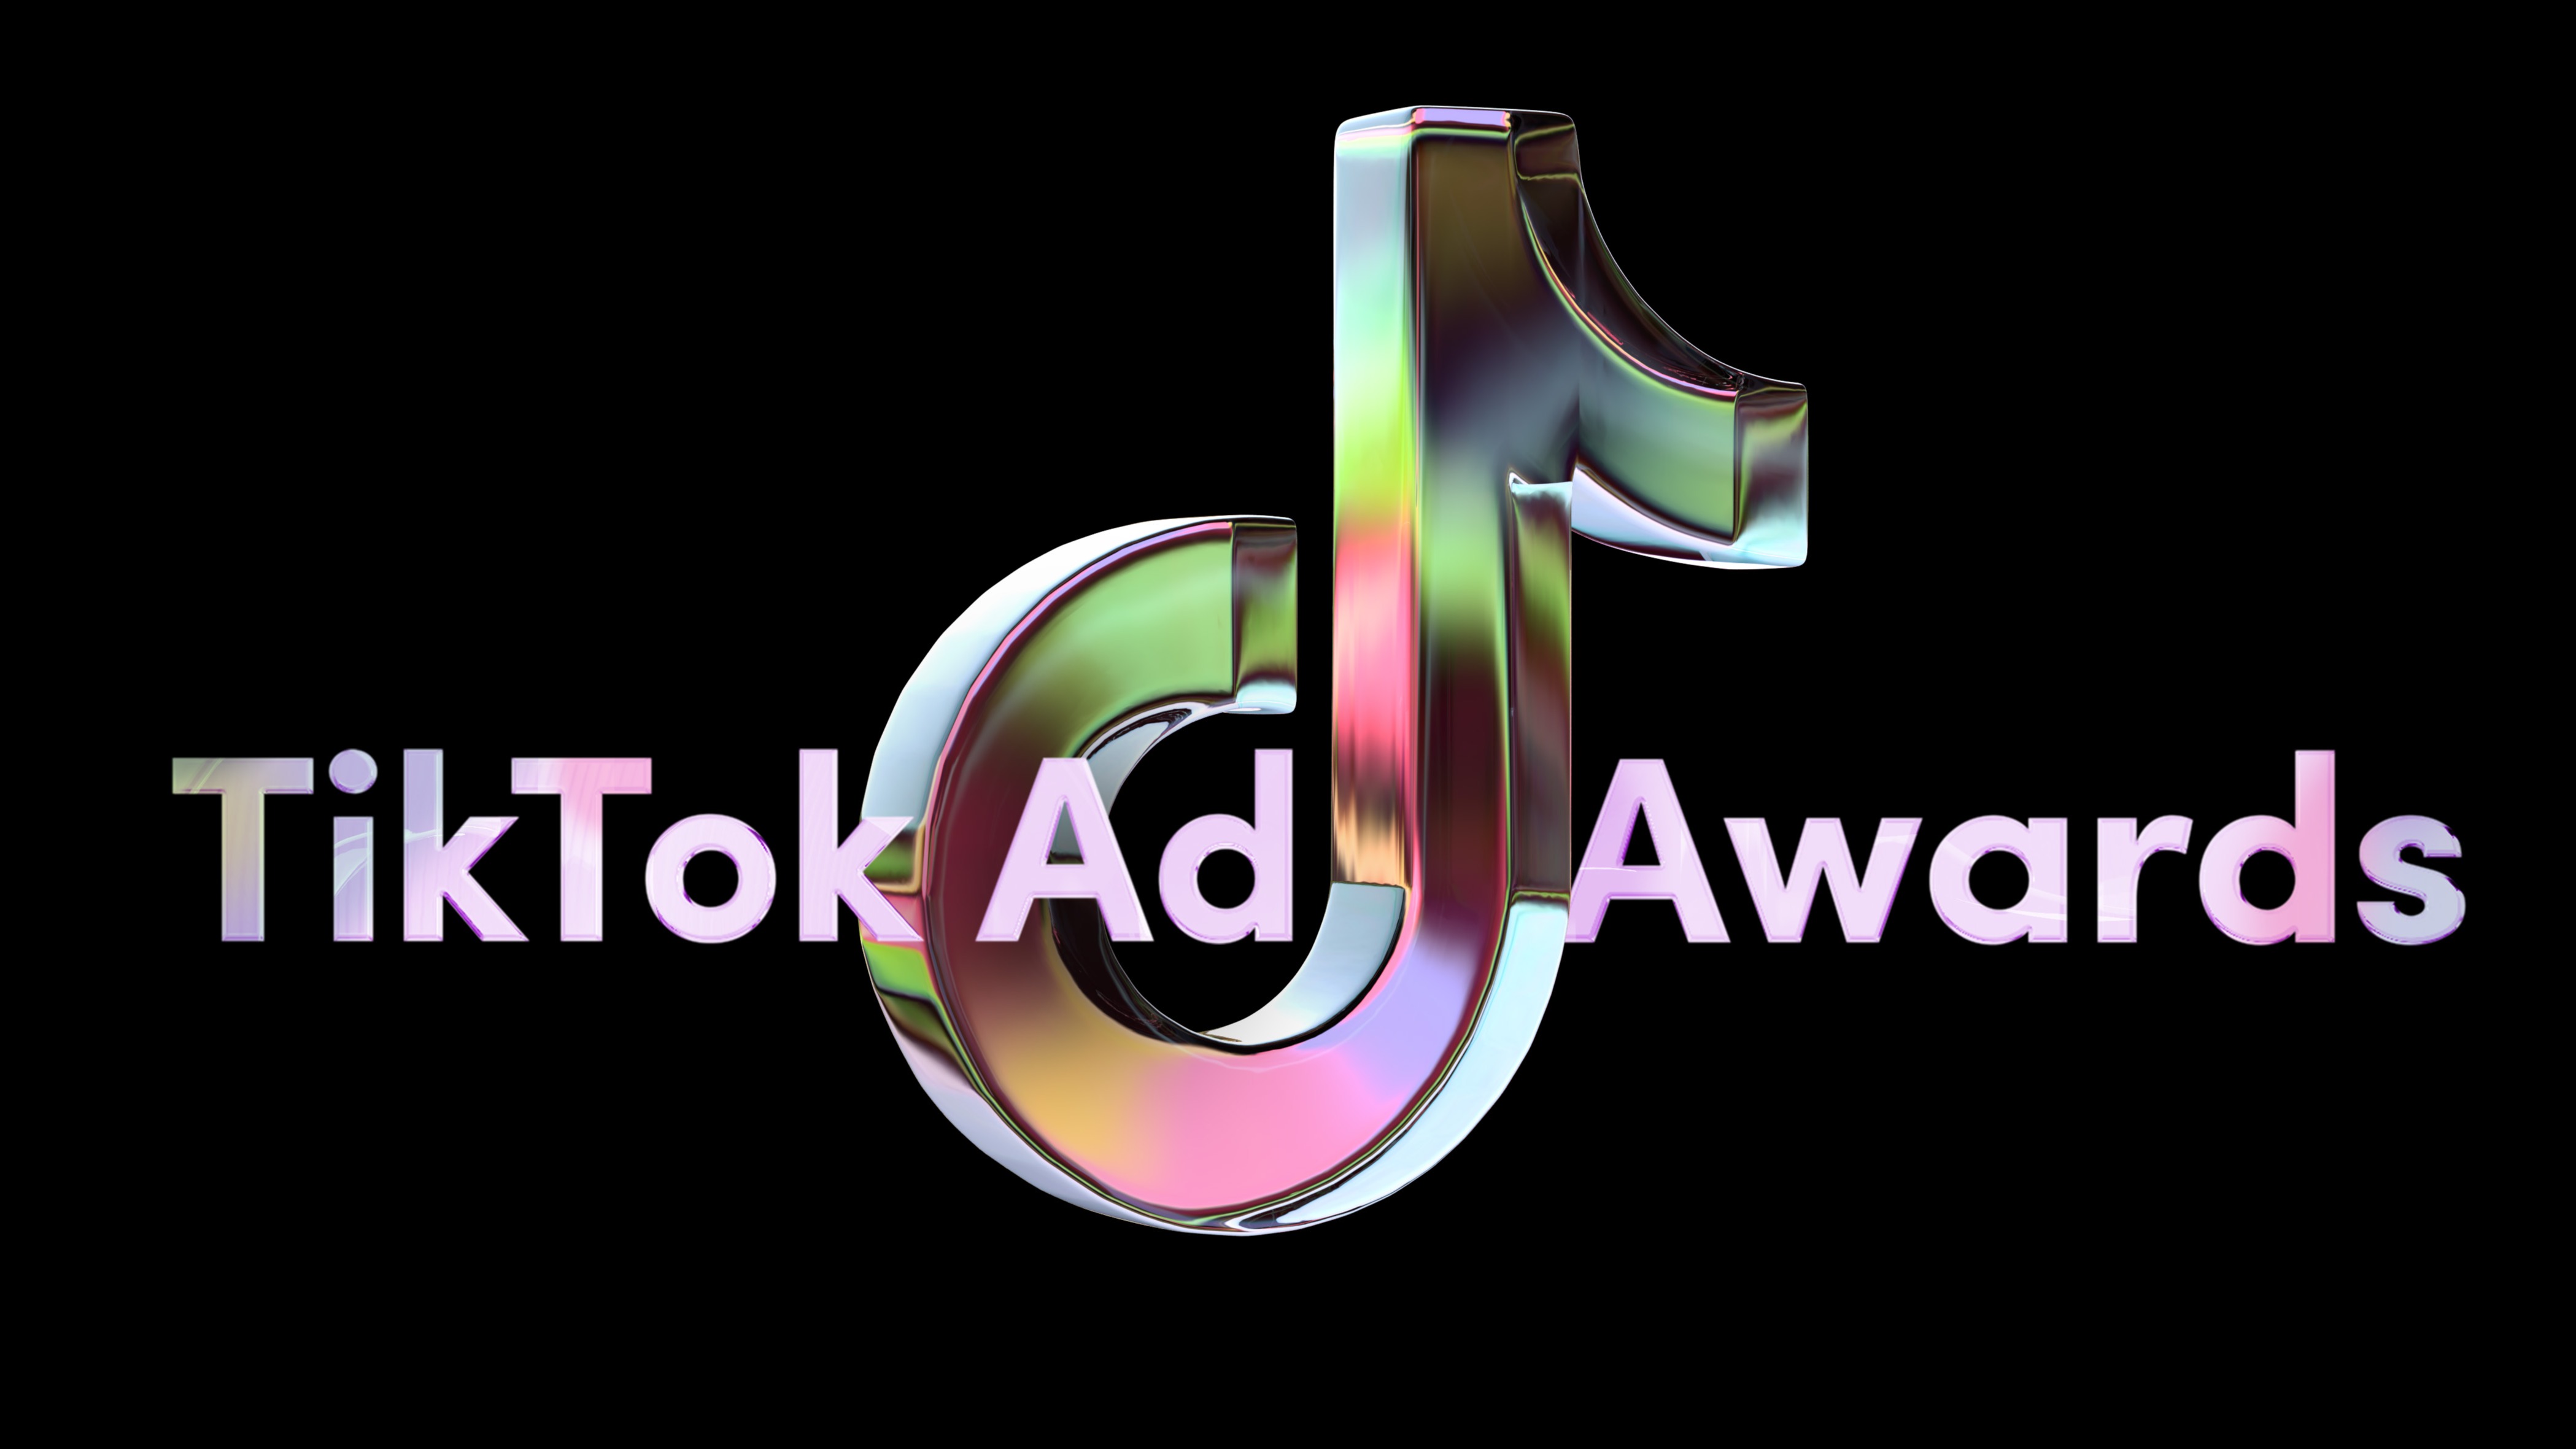 TikTok Ad Awards 1